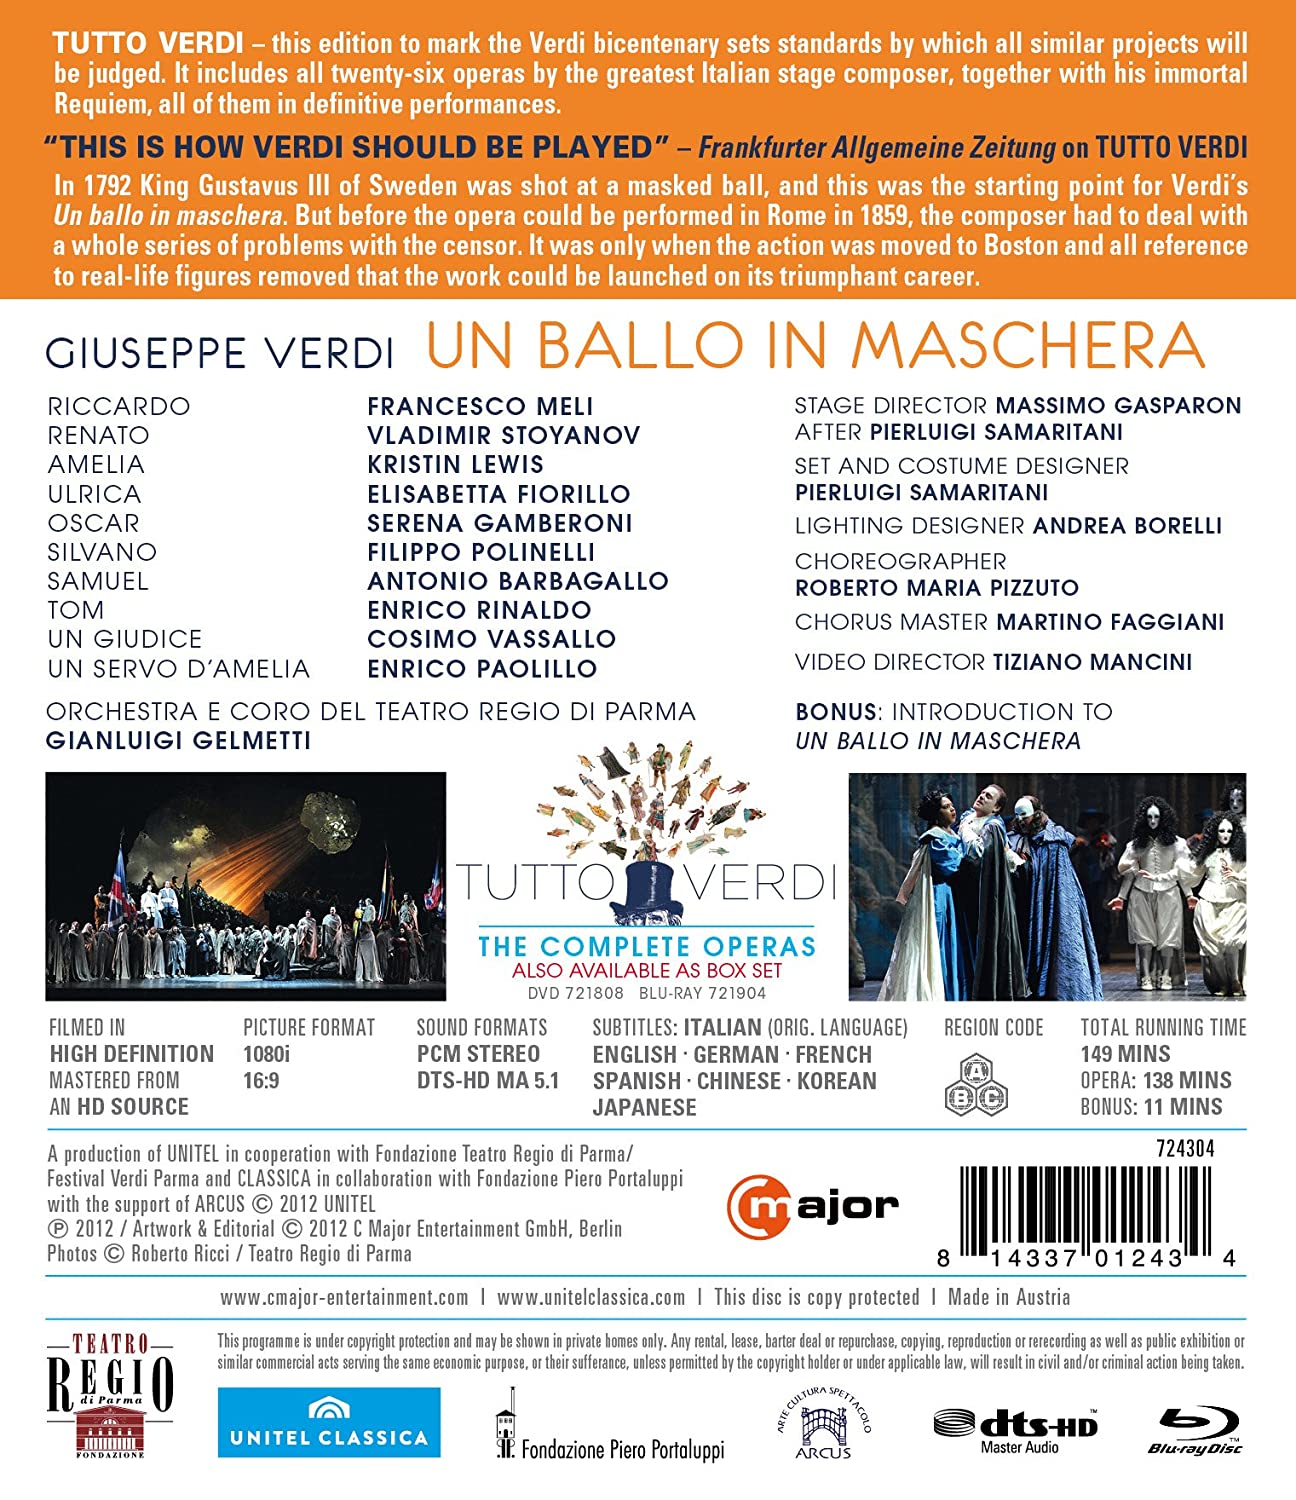 Gianluigi Gelmetti 베르디: 가면무도회 (Verdi: Un Ballo In Maschera) 